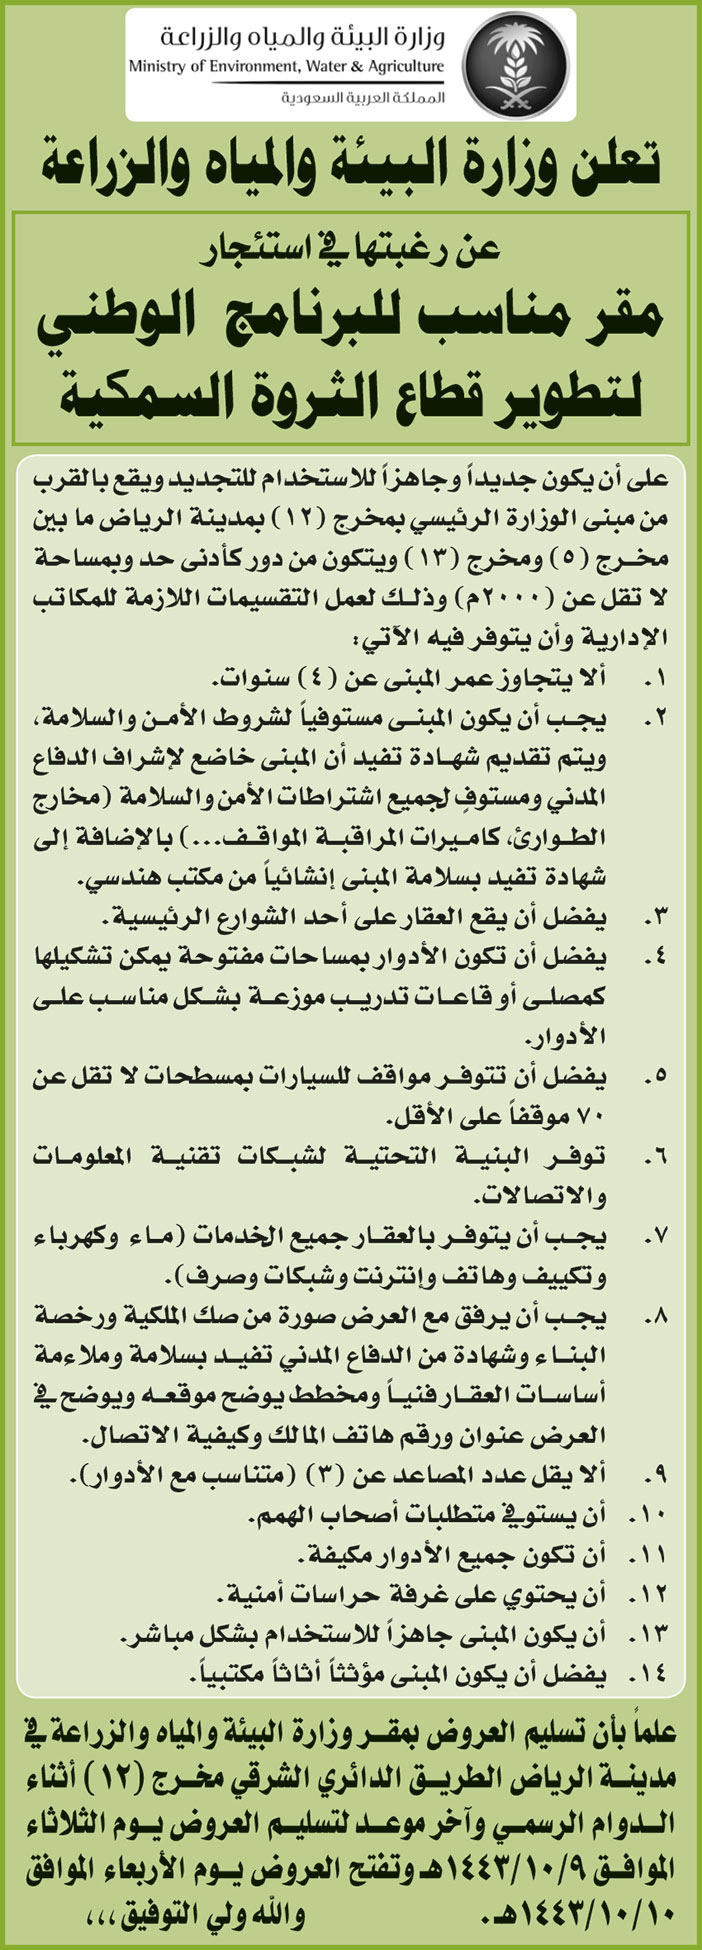 وزارة البيئة والمياه والزراعة ترغب في استئجار مقر مناسب للبرنامج الوطني لتطوير قطاع الثروة السمكية بمدينة الرياض 